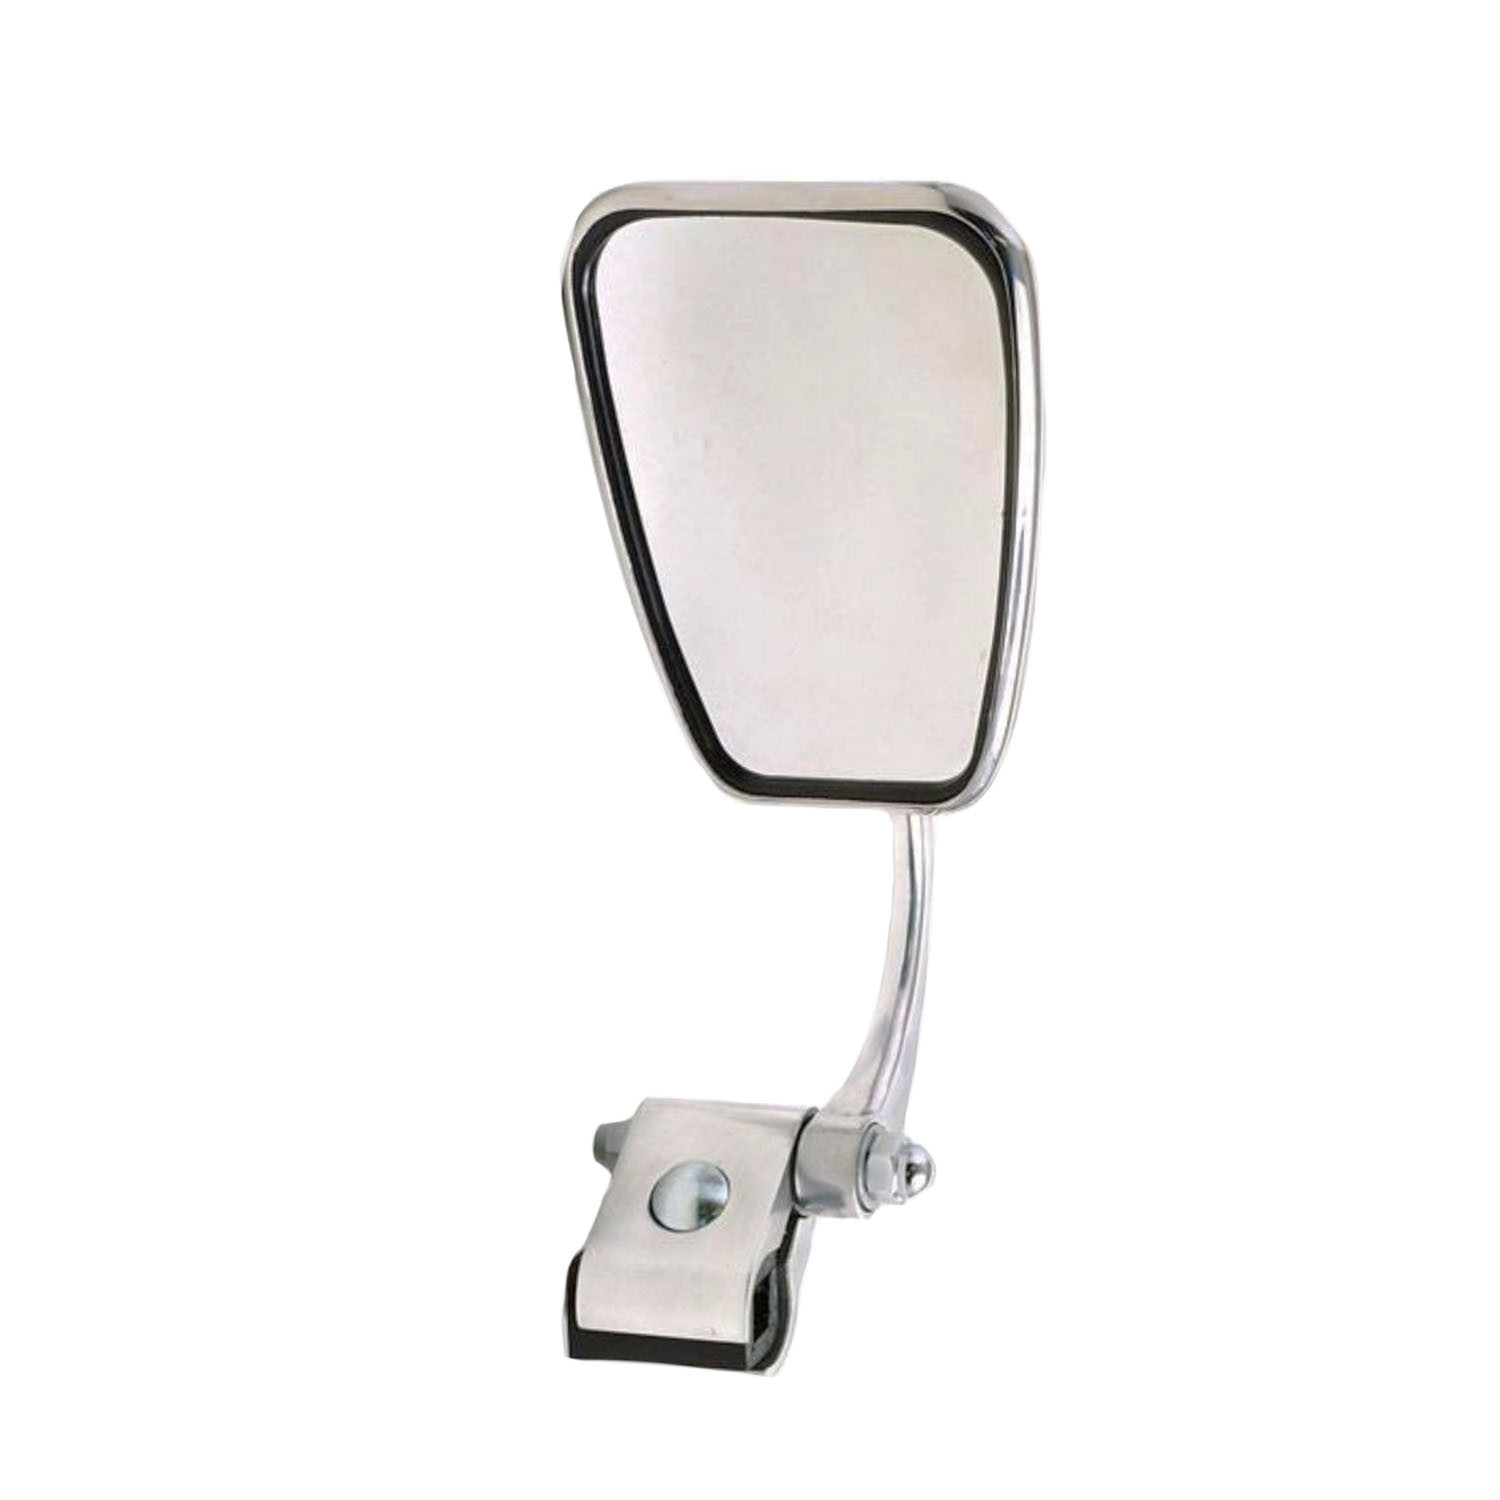 Adjustable rectangular Stadium chromed legshield mirror (left side)